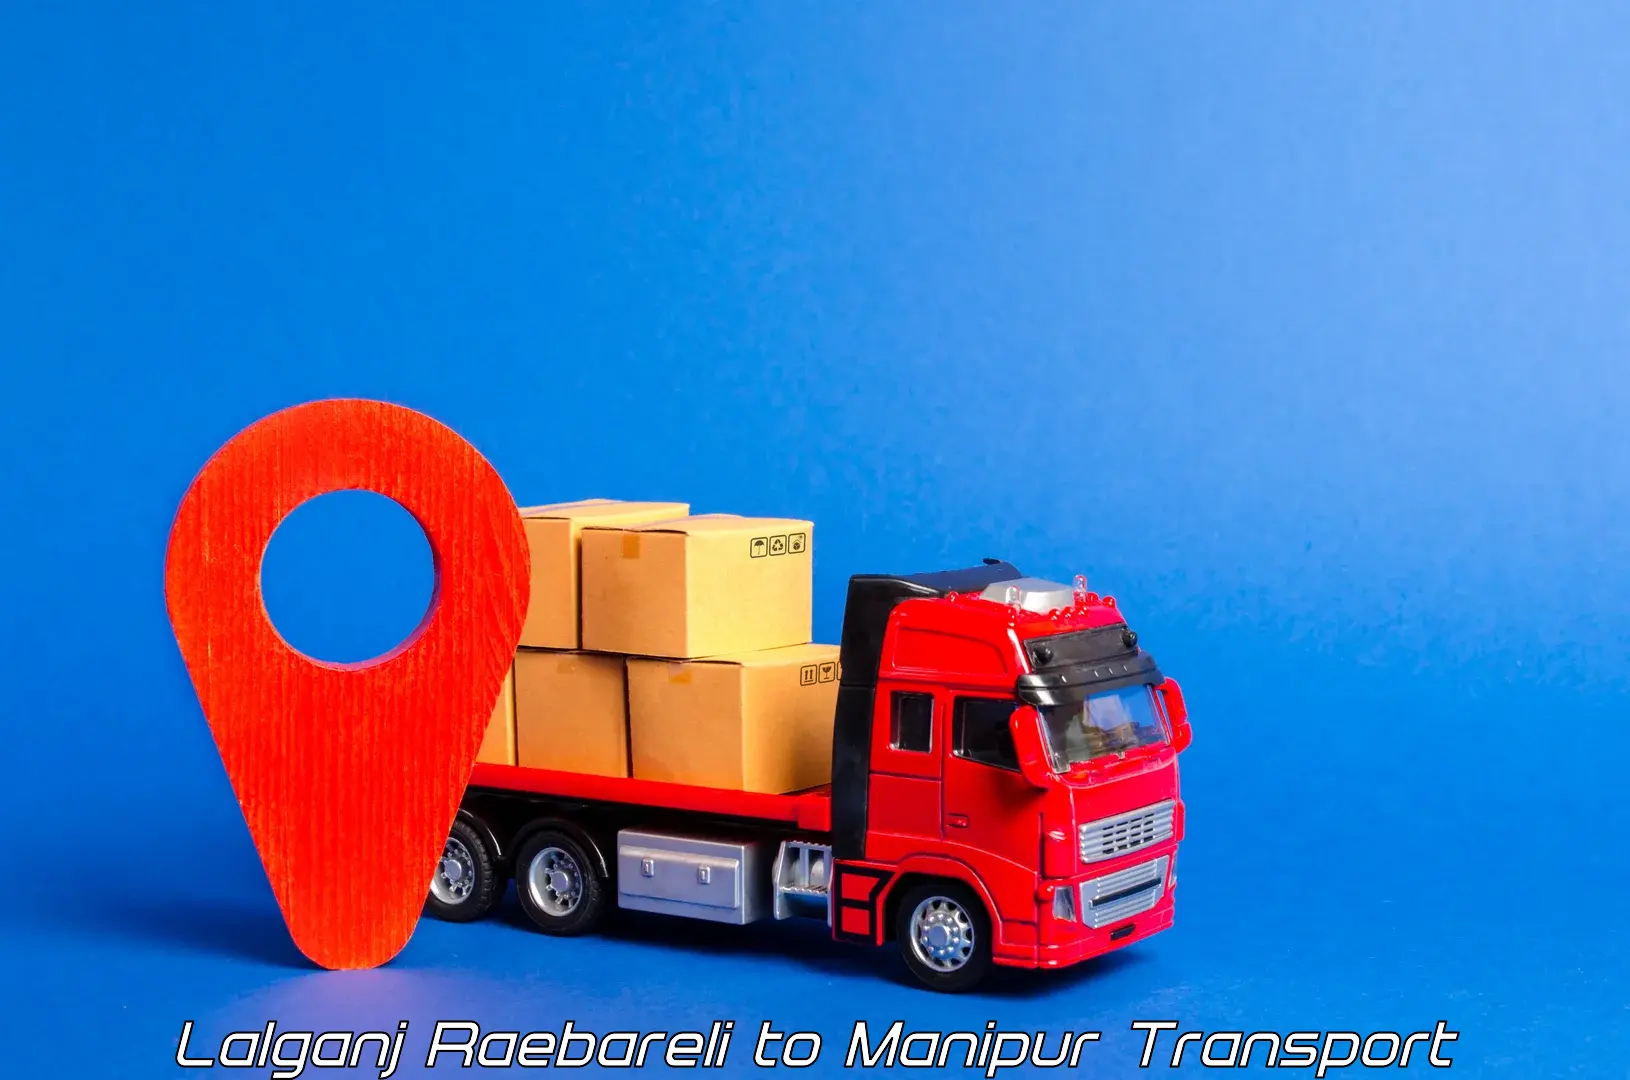 Pick up transport service Lalganj Raebareli to Moirang